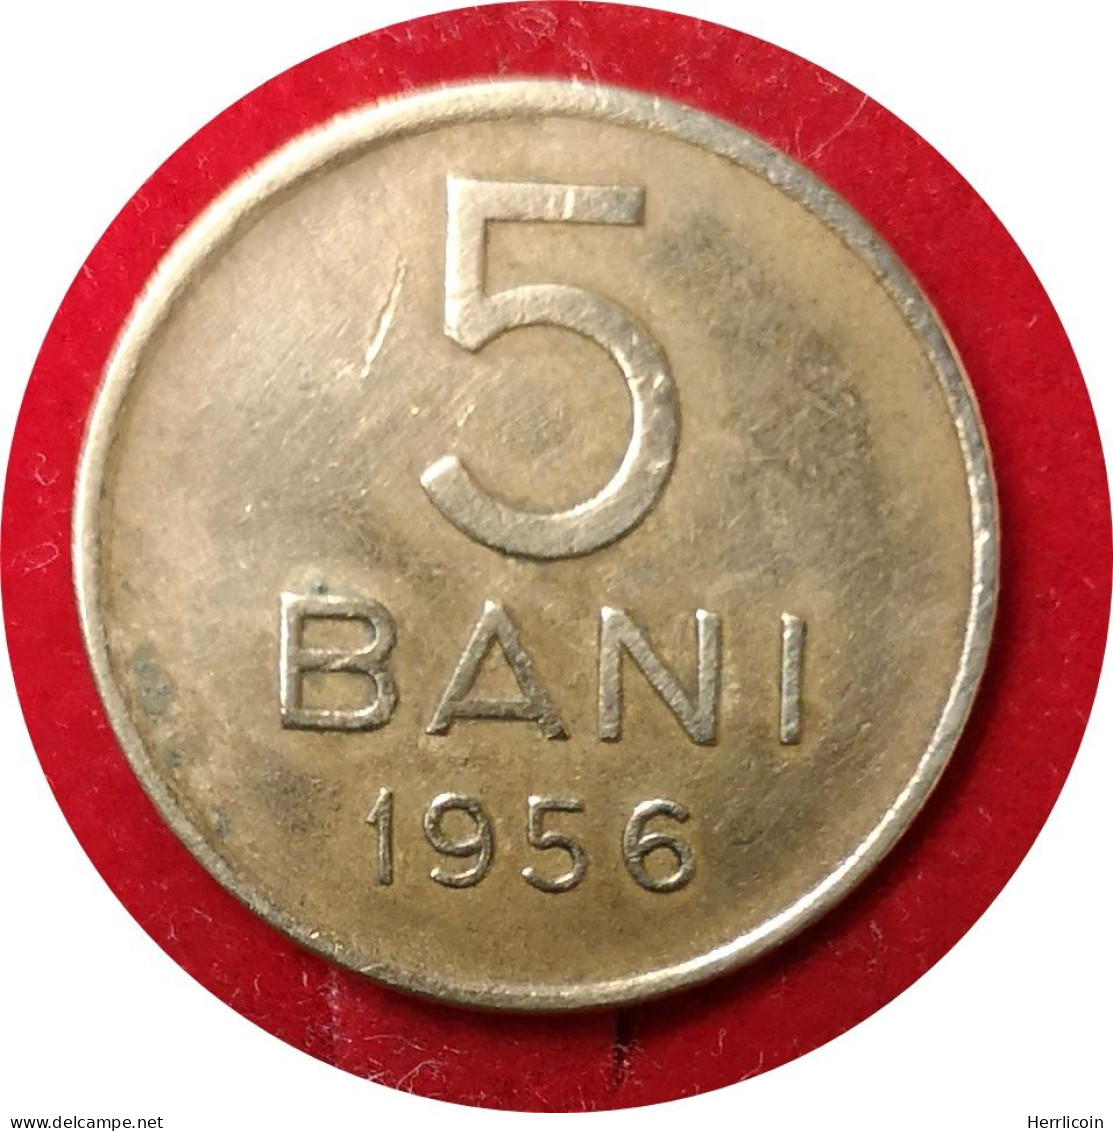 Monnaie Roumanie - 1956 - 5 Bani République Populaire - Rumänien